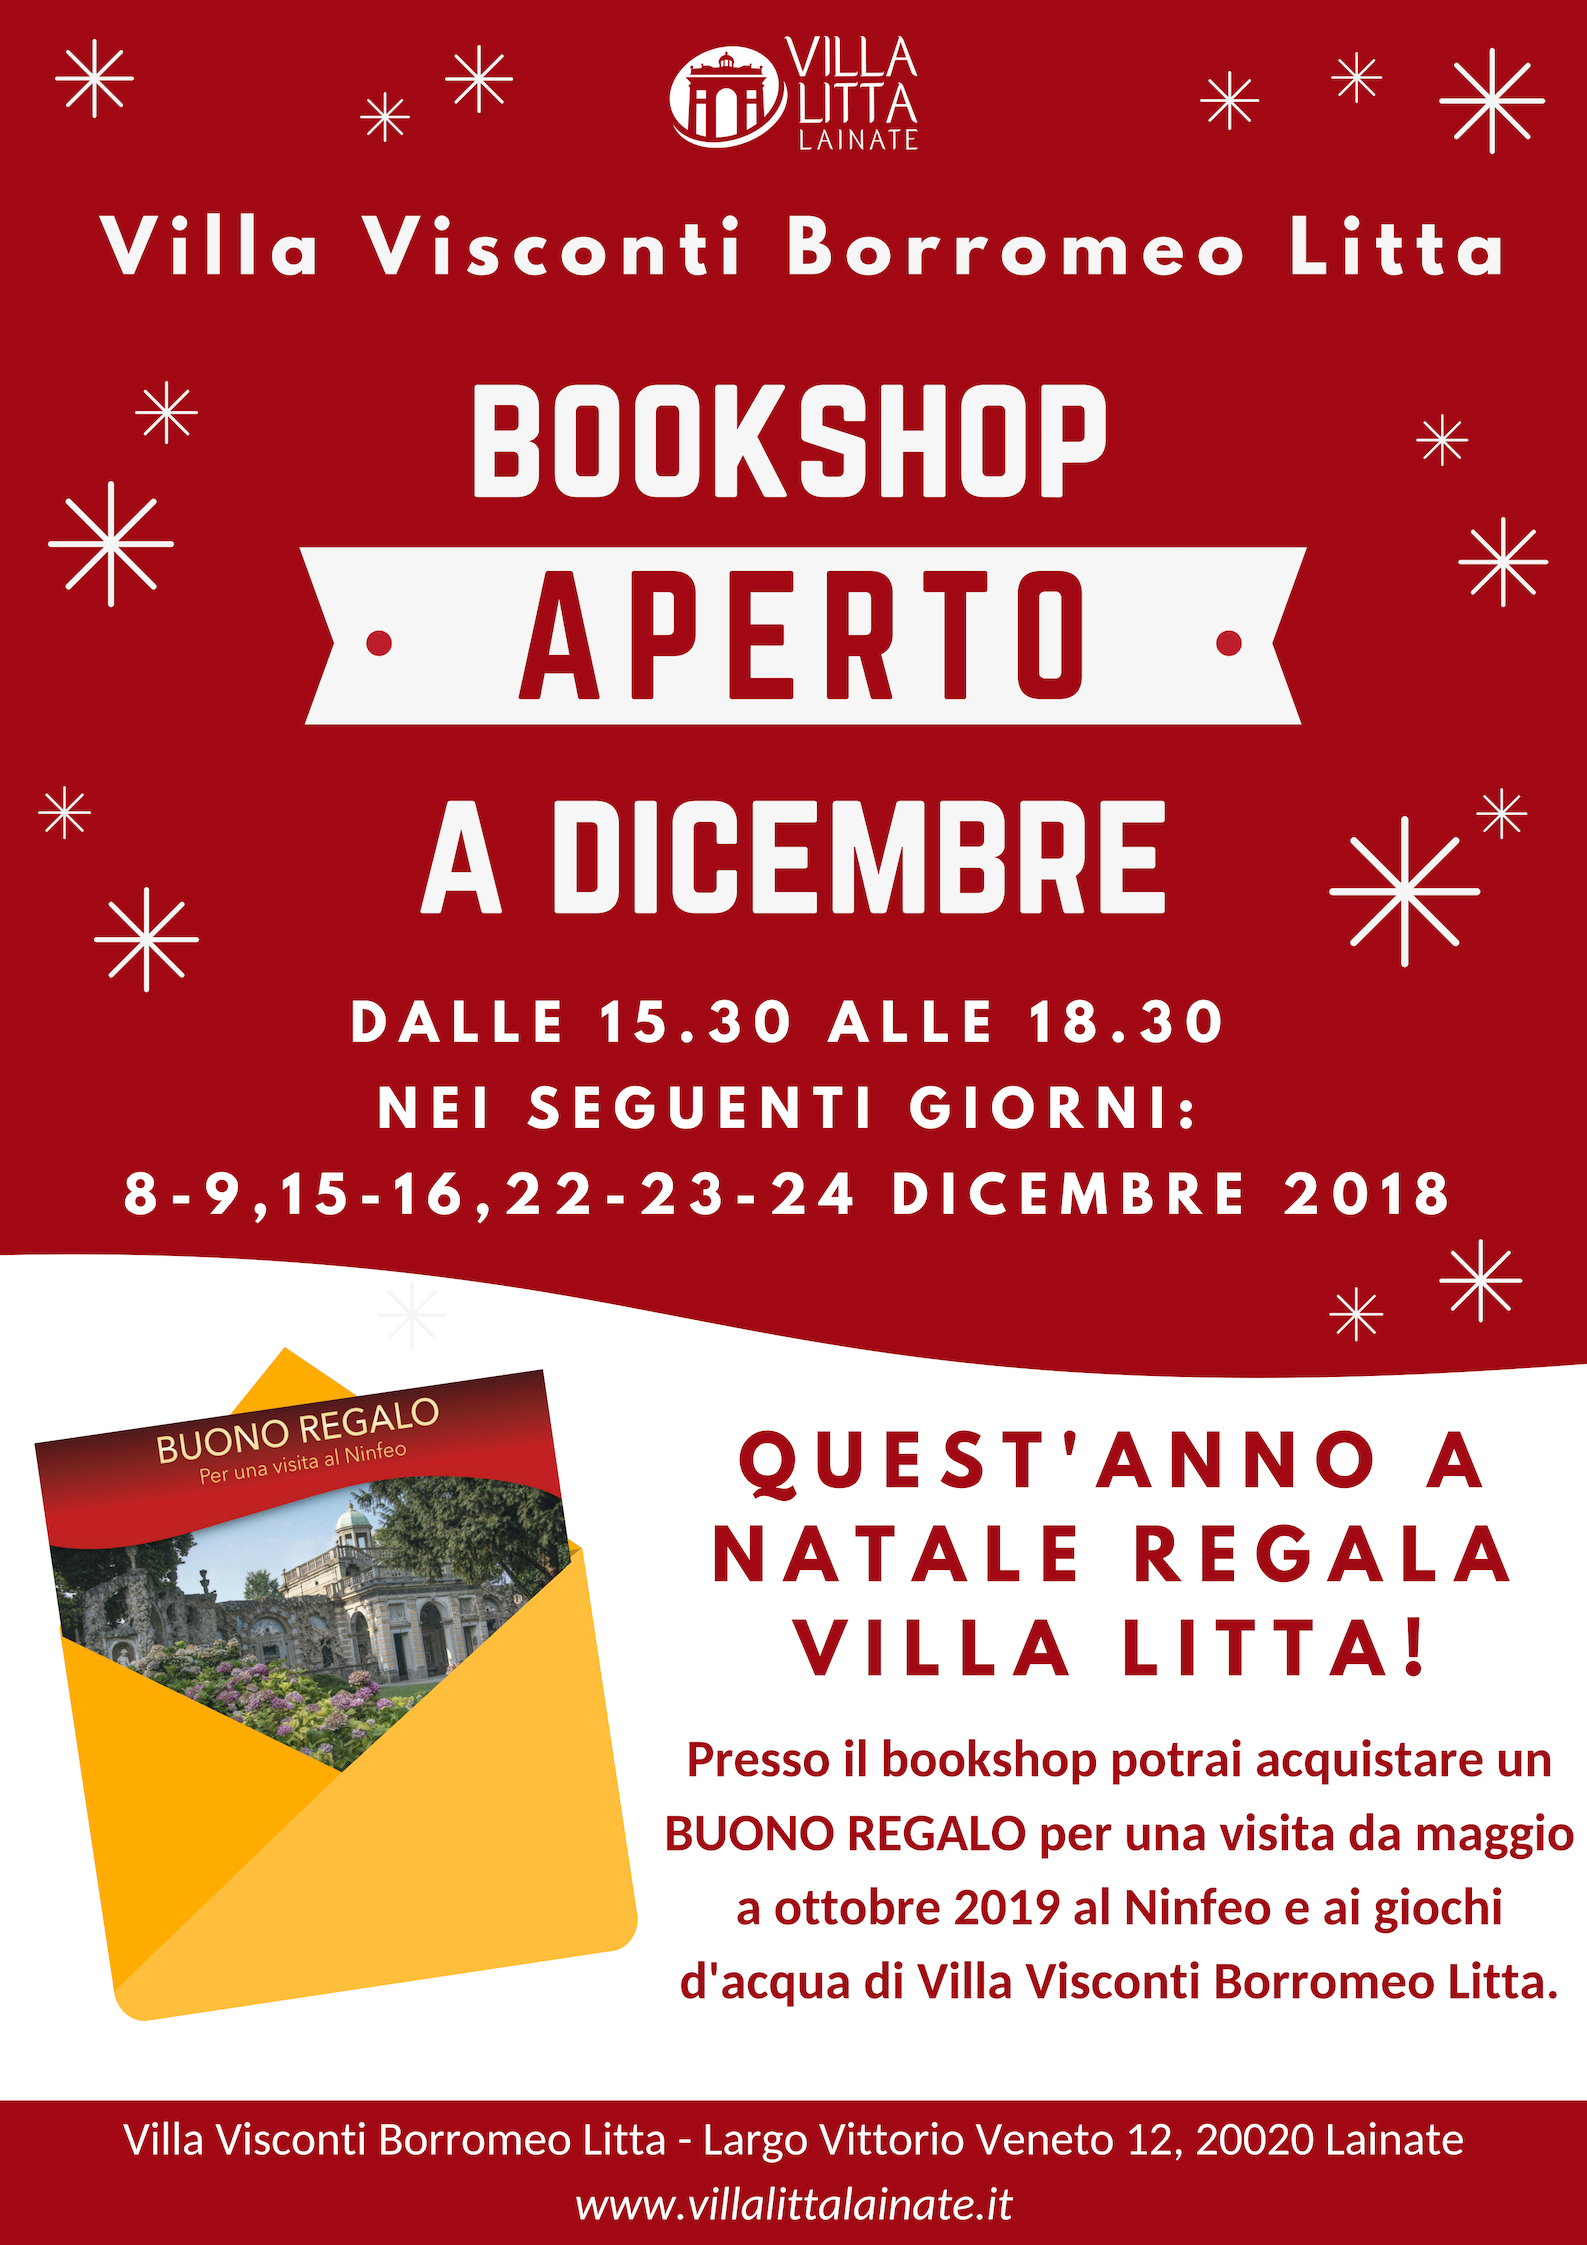 A Natale regala un'emozione in Villa: vieni al Bookshop aperto a dicembre